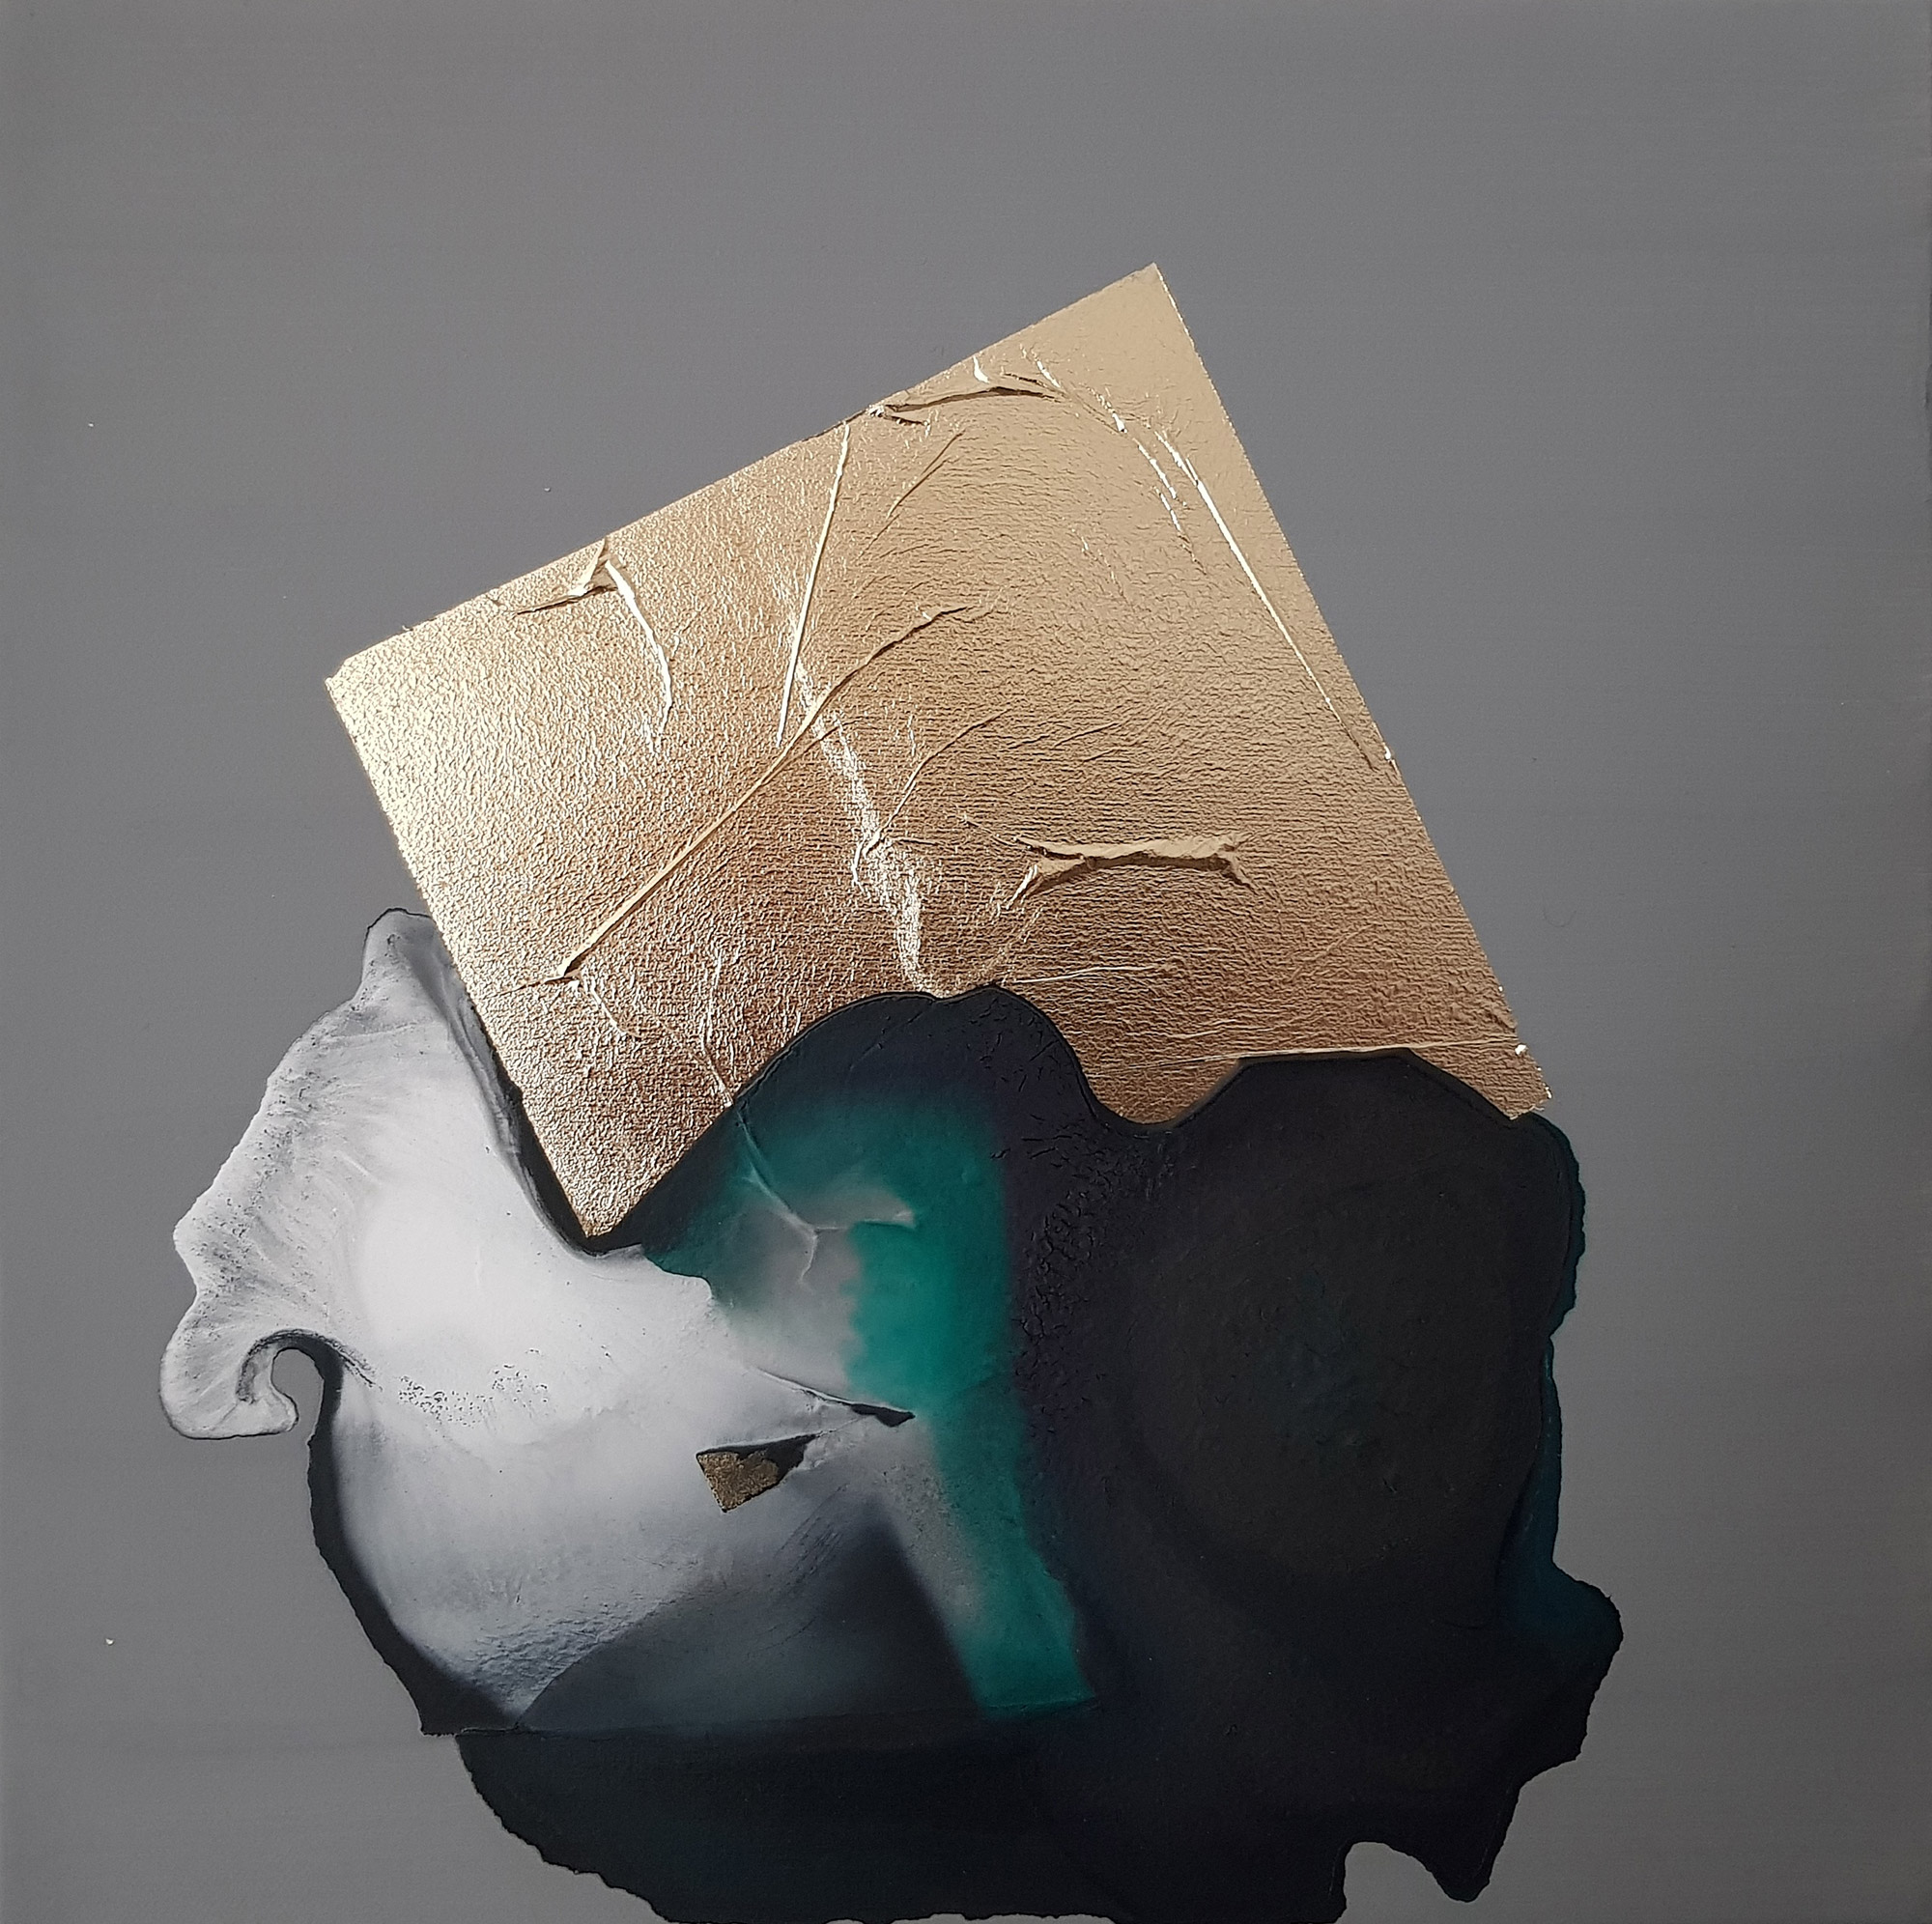 Marco Angelini, 580g, 2018, 30×30 cm, płótno, technika mieszana (źródło: materiały prasowe)